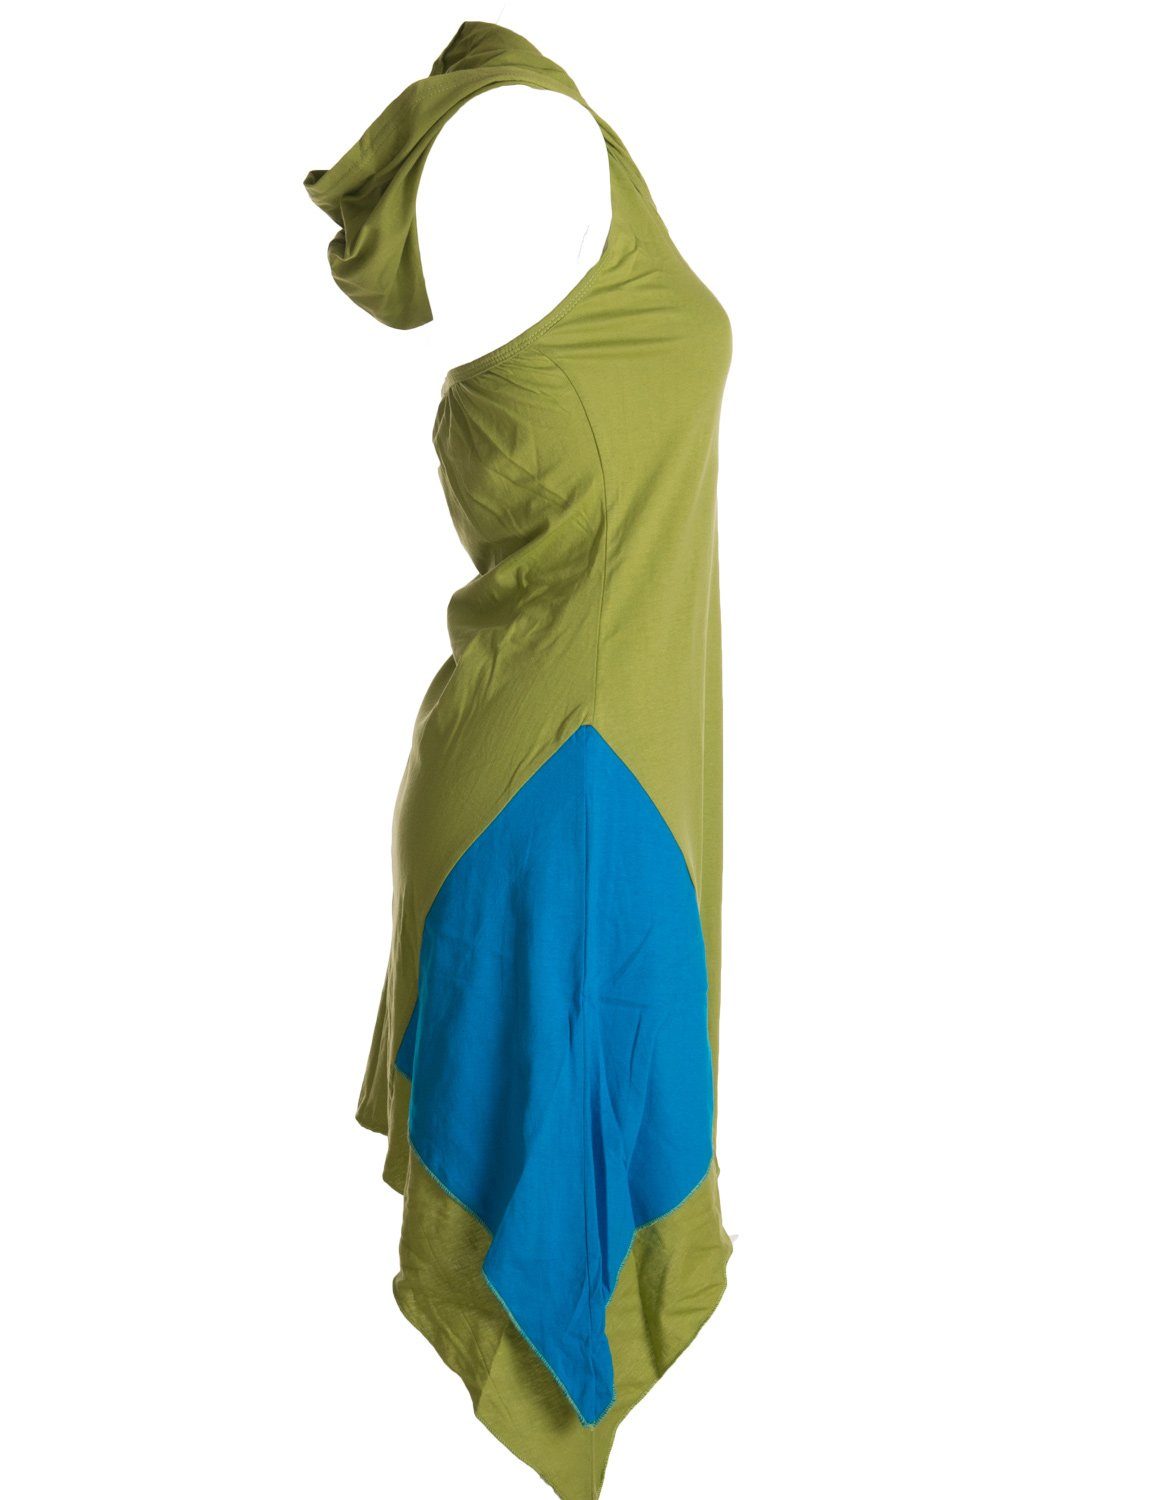 Zipfeltunika grün Boho, Vishes Elfen Hippie, Lagenlook Asymmetrisches Ethno, Style Neckholder Neckholderkleid